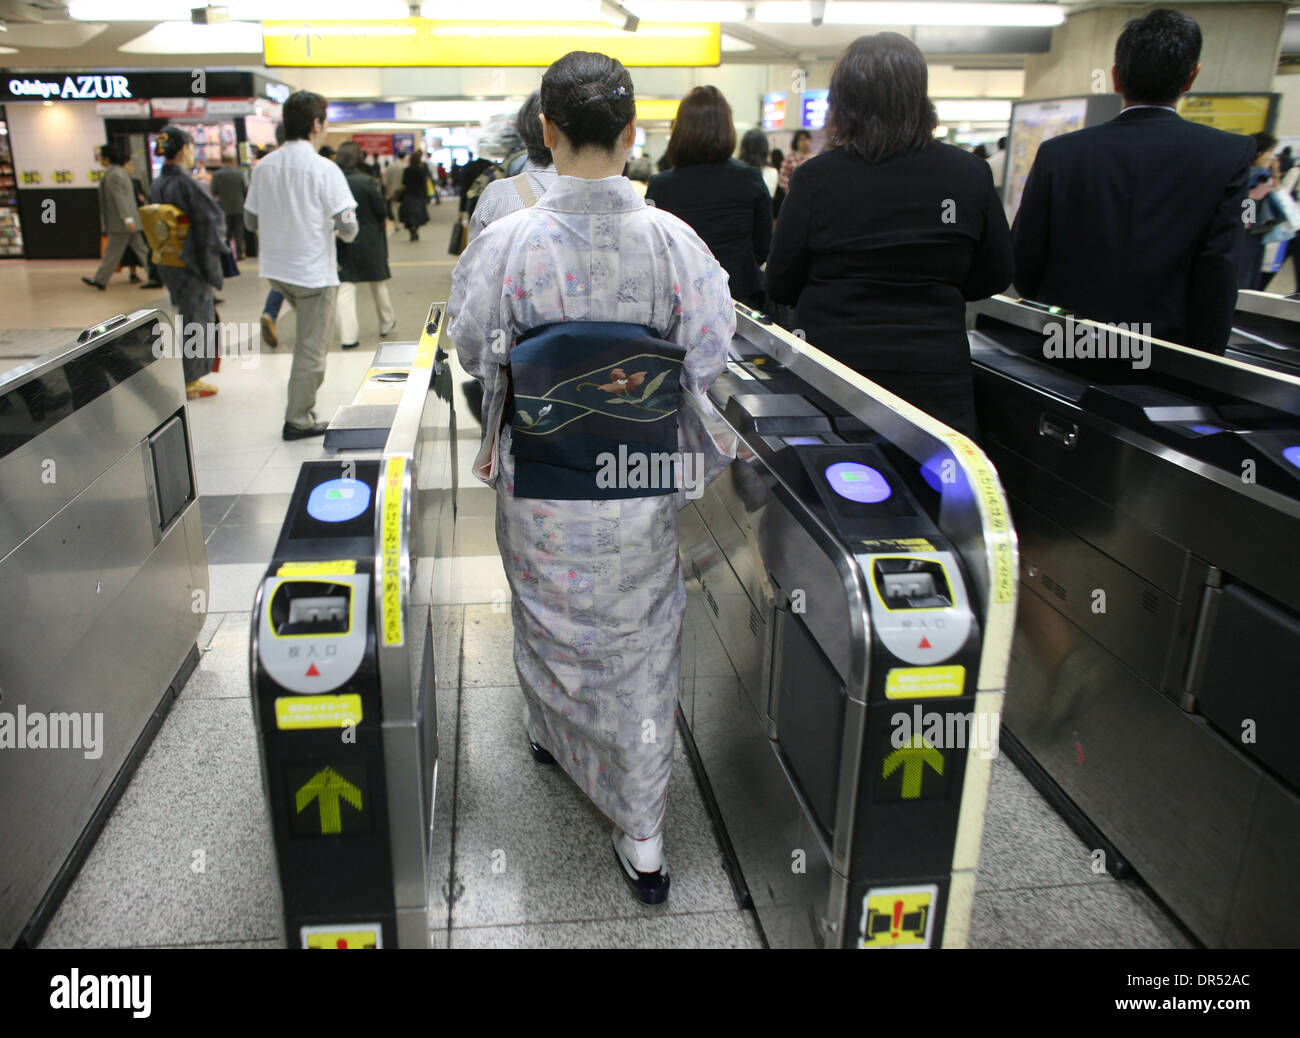 Donne che indossano un kimono tradizionali, una donna entra nel sotterraneo. Della Tokyo metropolitana sistema è ben sviluppata e organizzata. Con i treni arrivano ogni due minuti, alcune stazioni è in grado di trasportare più di un milione di passeggeri al giorno. Foto Stock